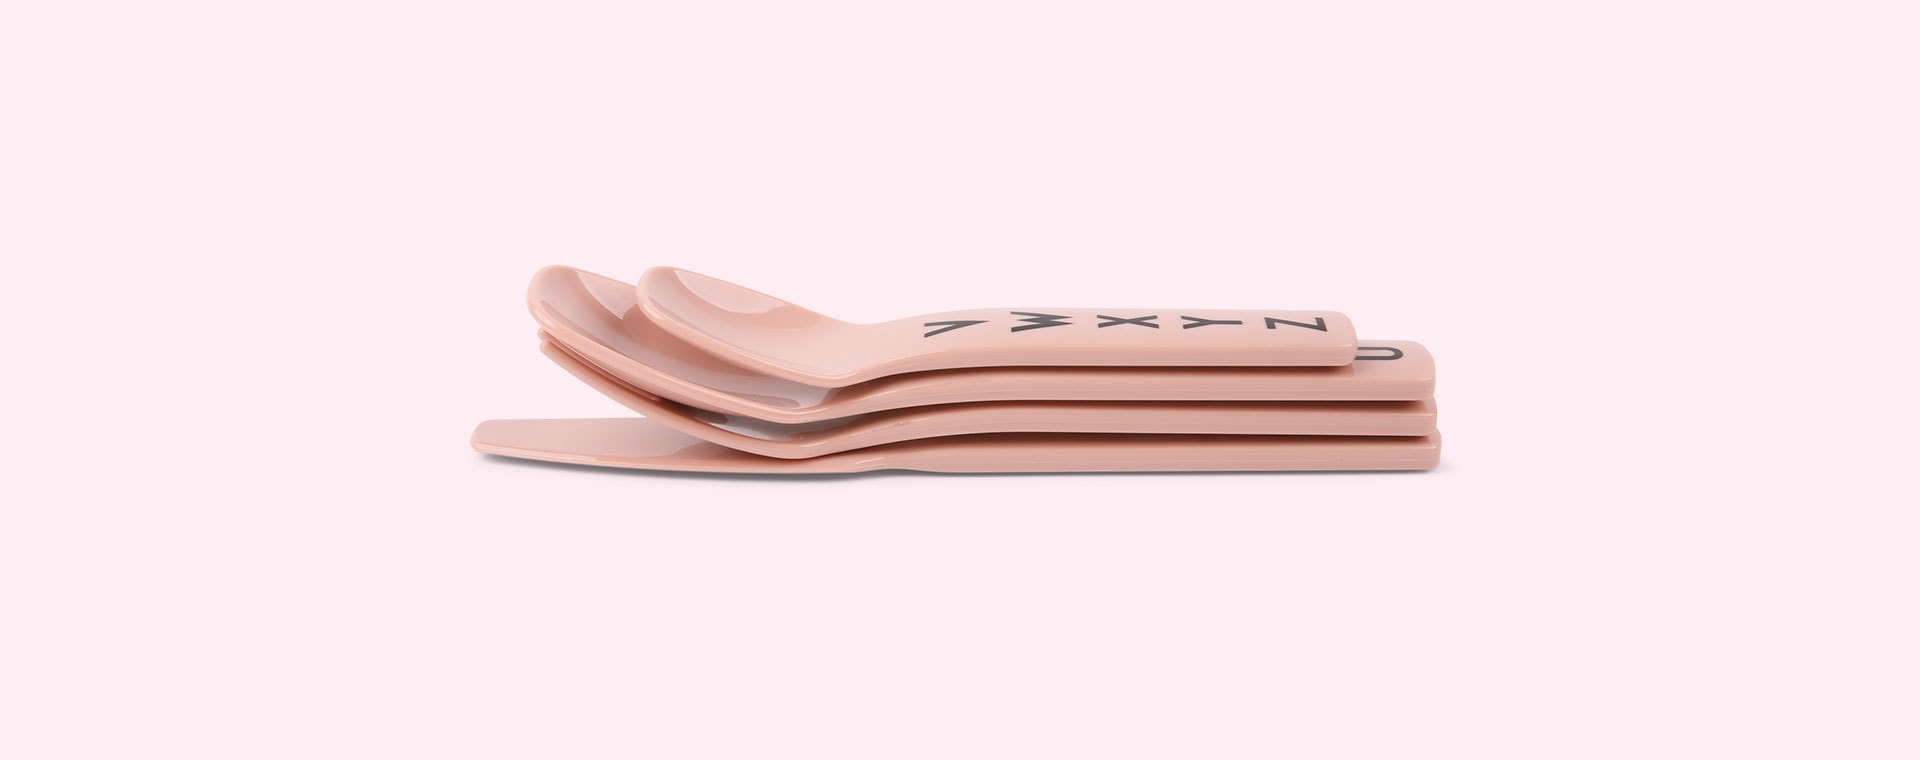 Nude Design Letters Eat & Learn Kids Cutlery